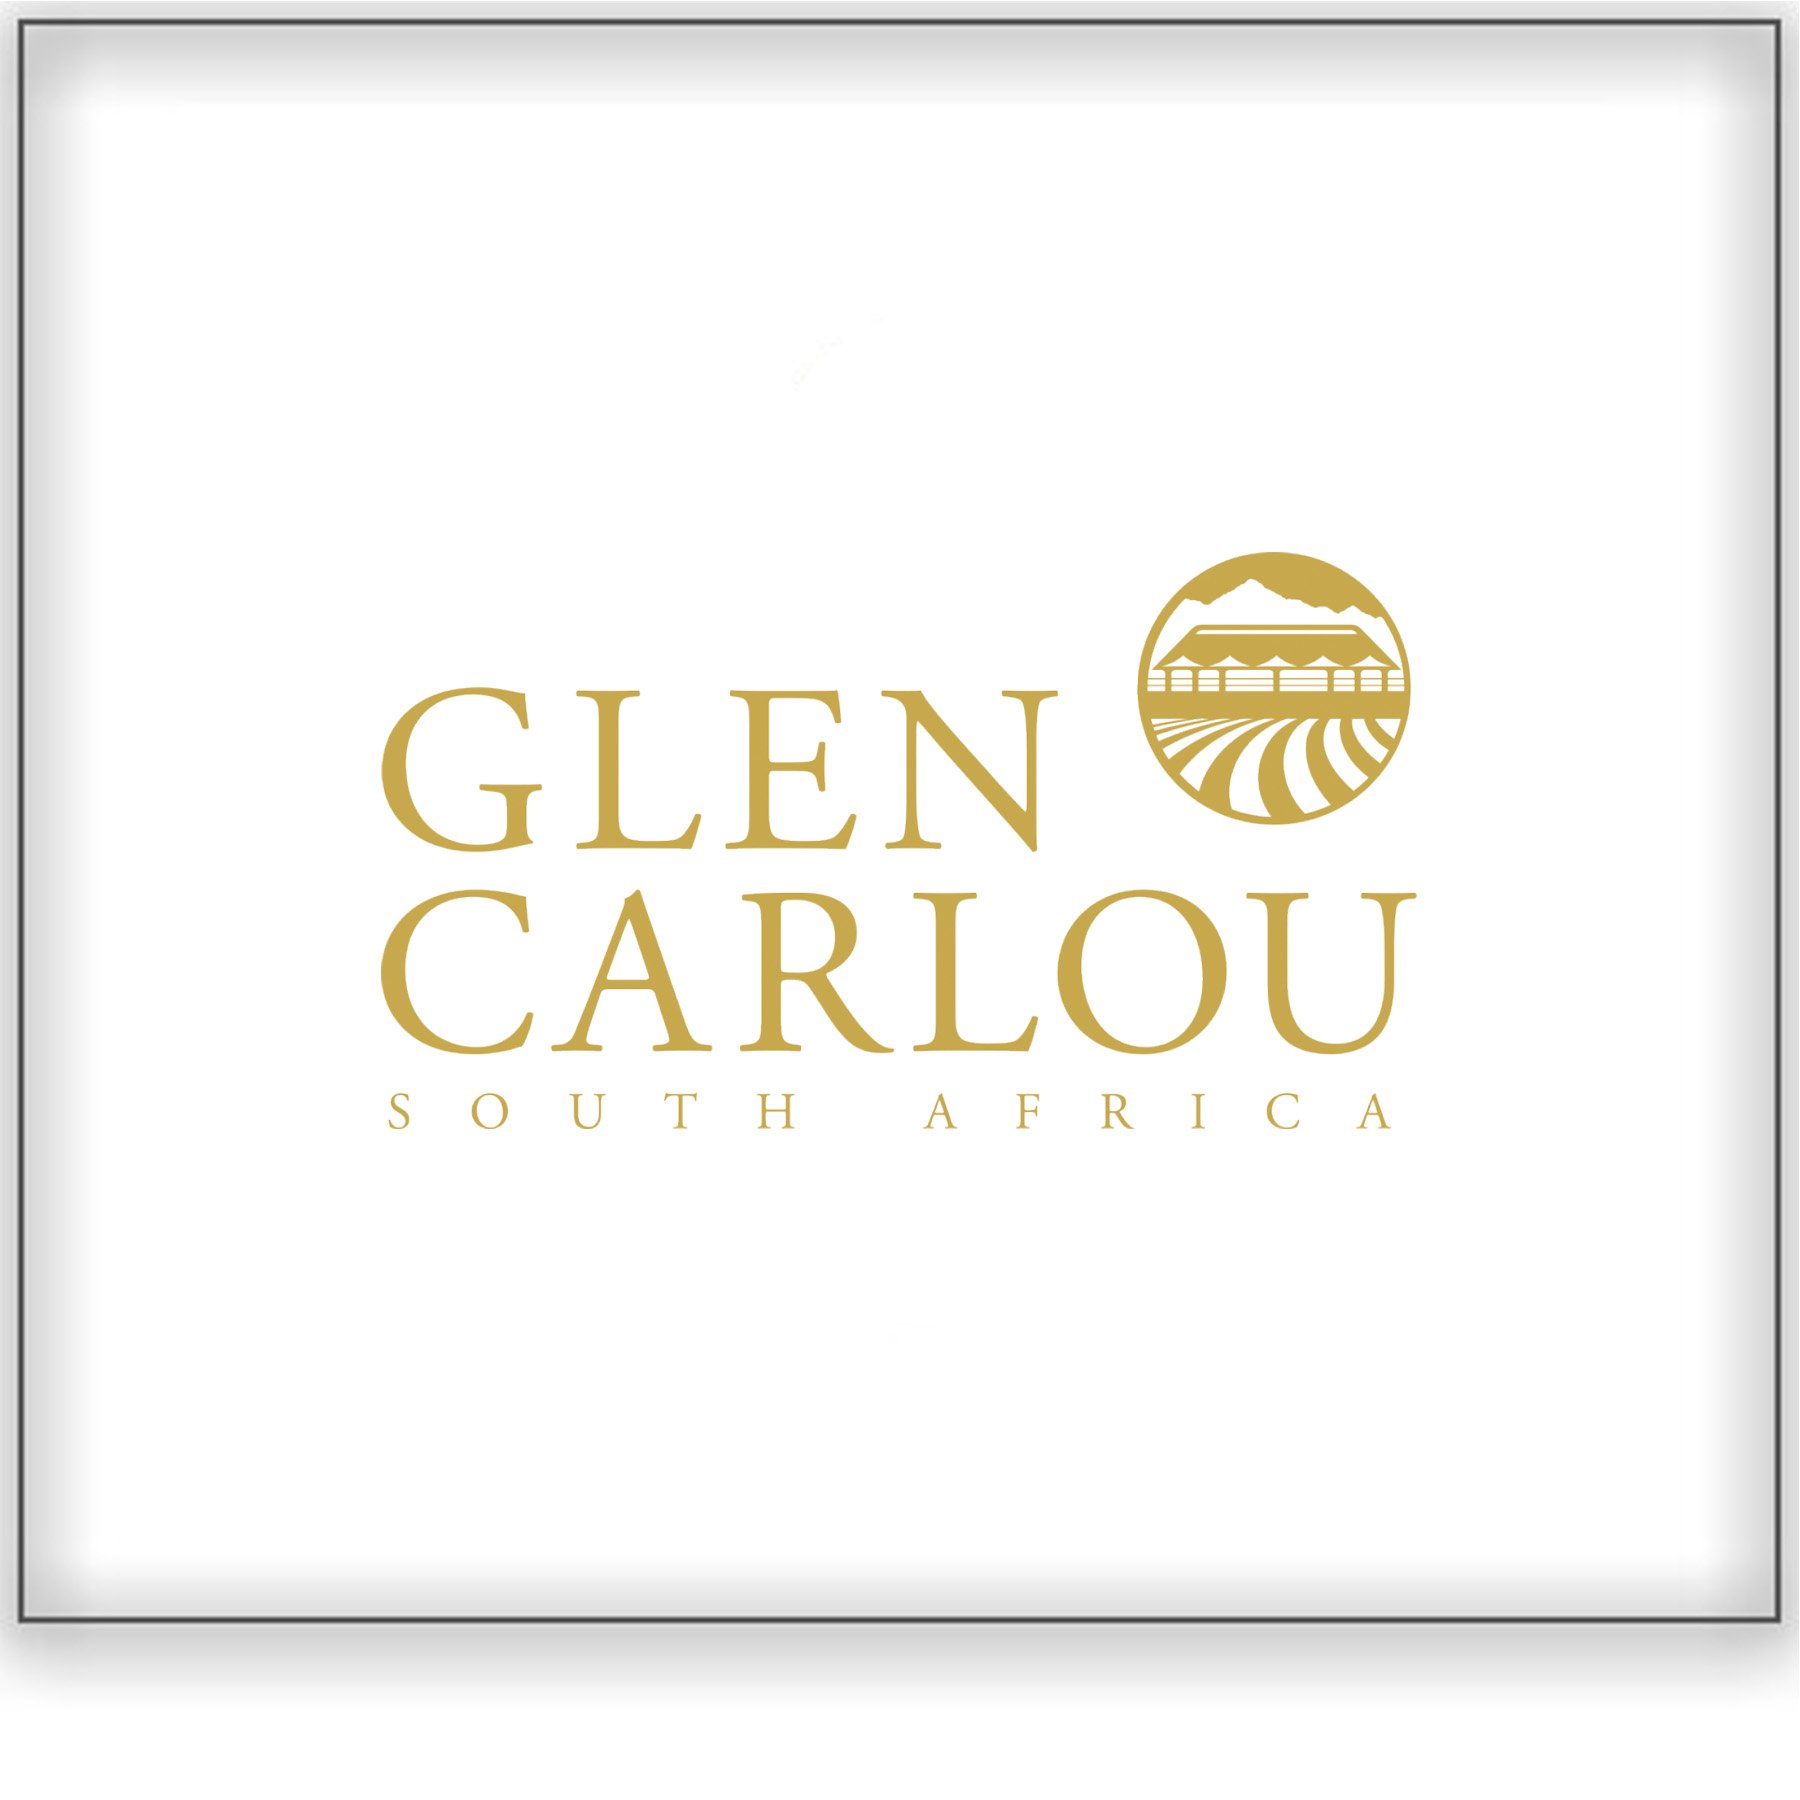 Glen Carlou&lt;a href=/glen-carlou&gt;Simonsberg-Paarl, South Africa ➤&lt;/a&gt; 